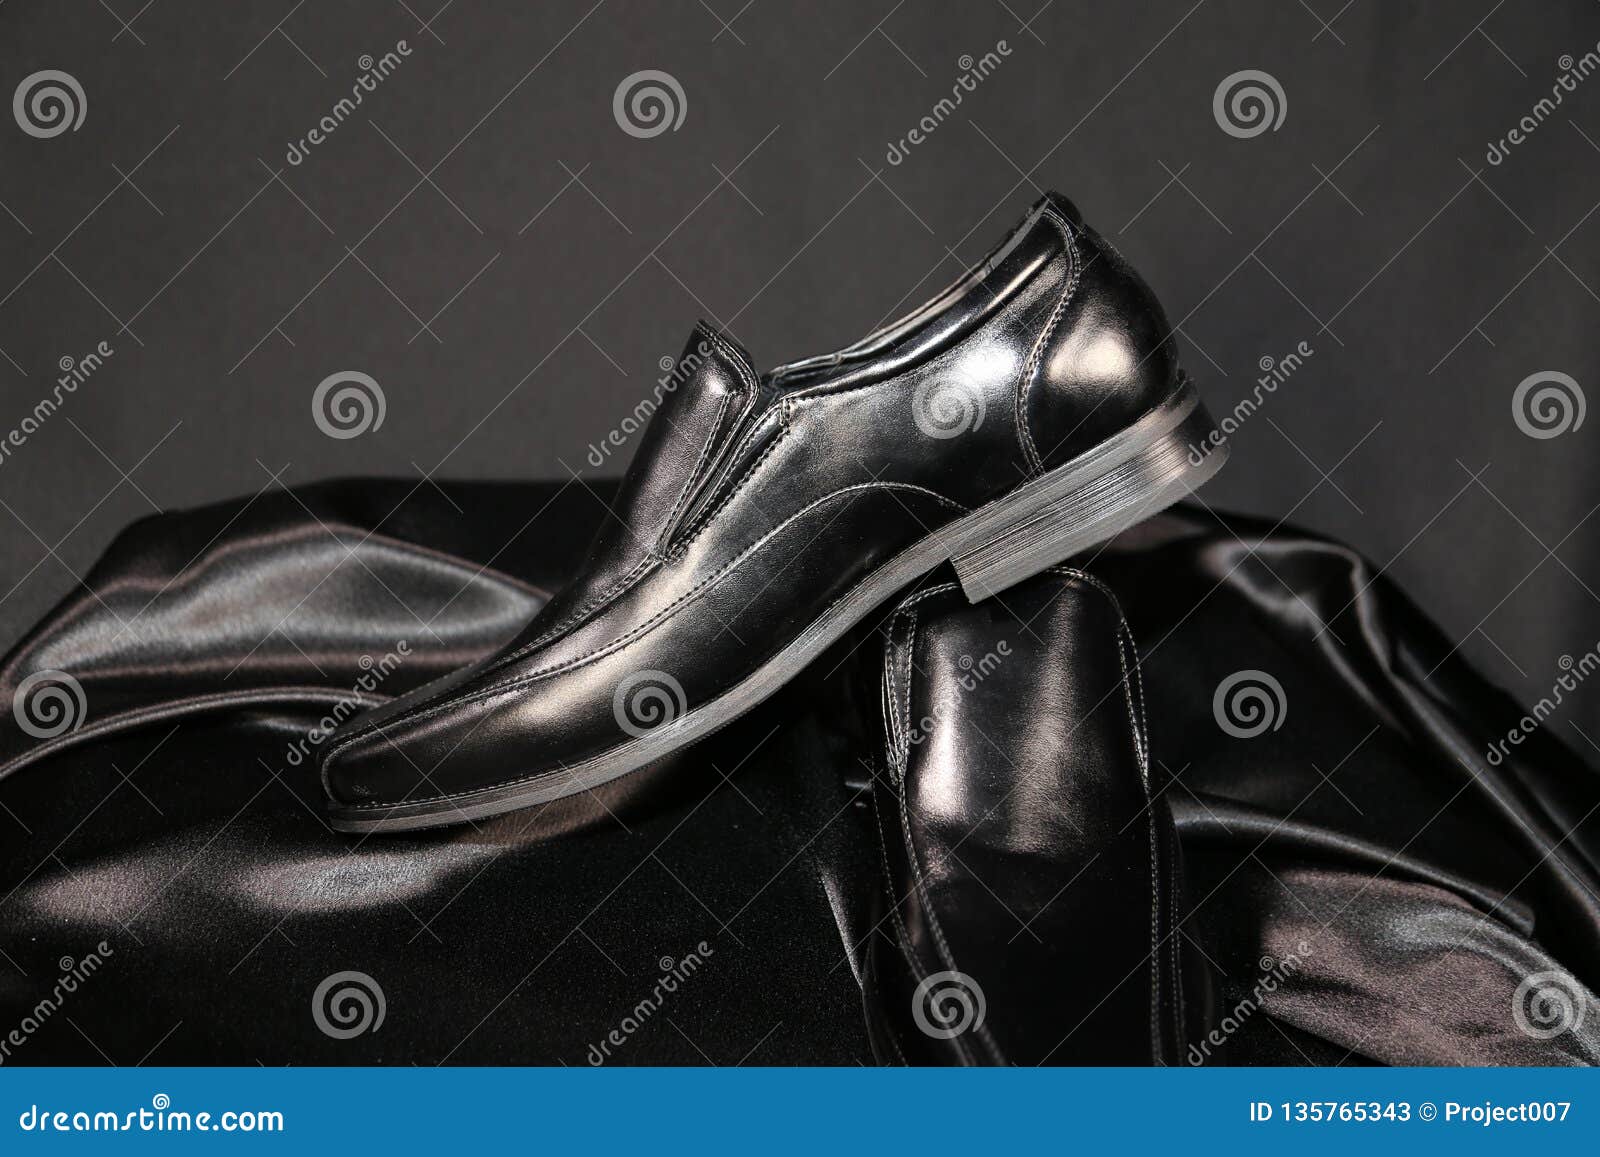 Ropa De Caballero Formal Zapatos De Cuero Negros Para El Botique Del Smoking Imagen de archivo - Imagen de menswear, 135765343